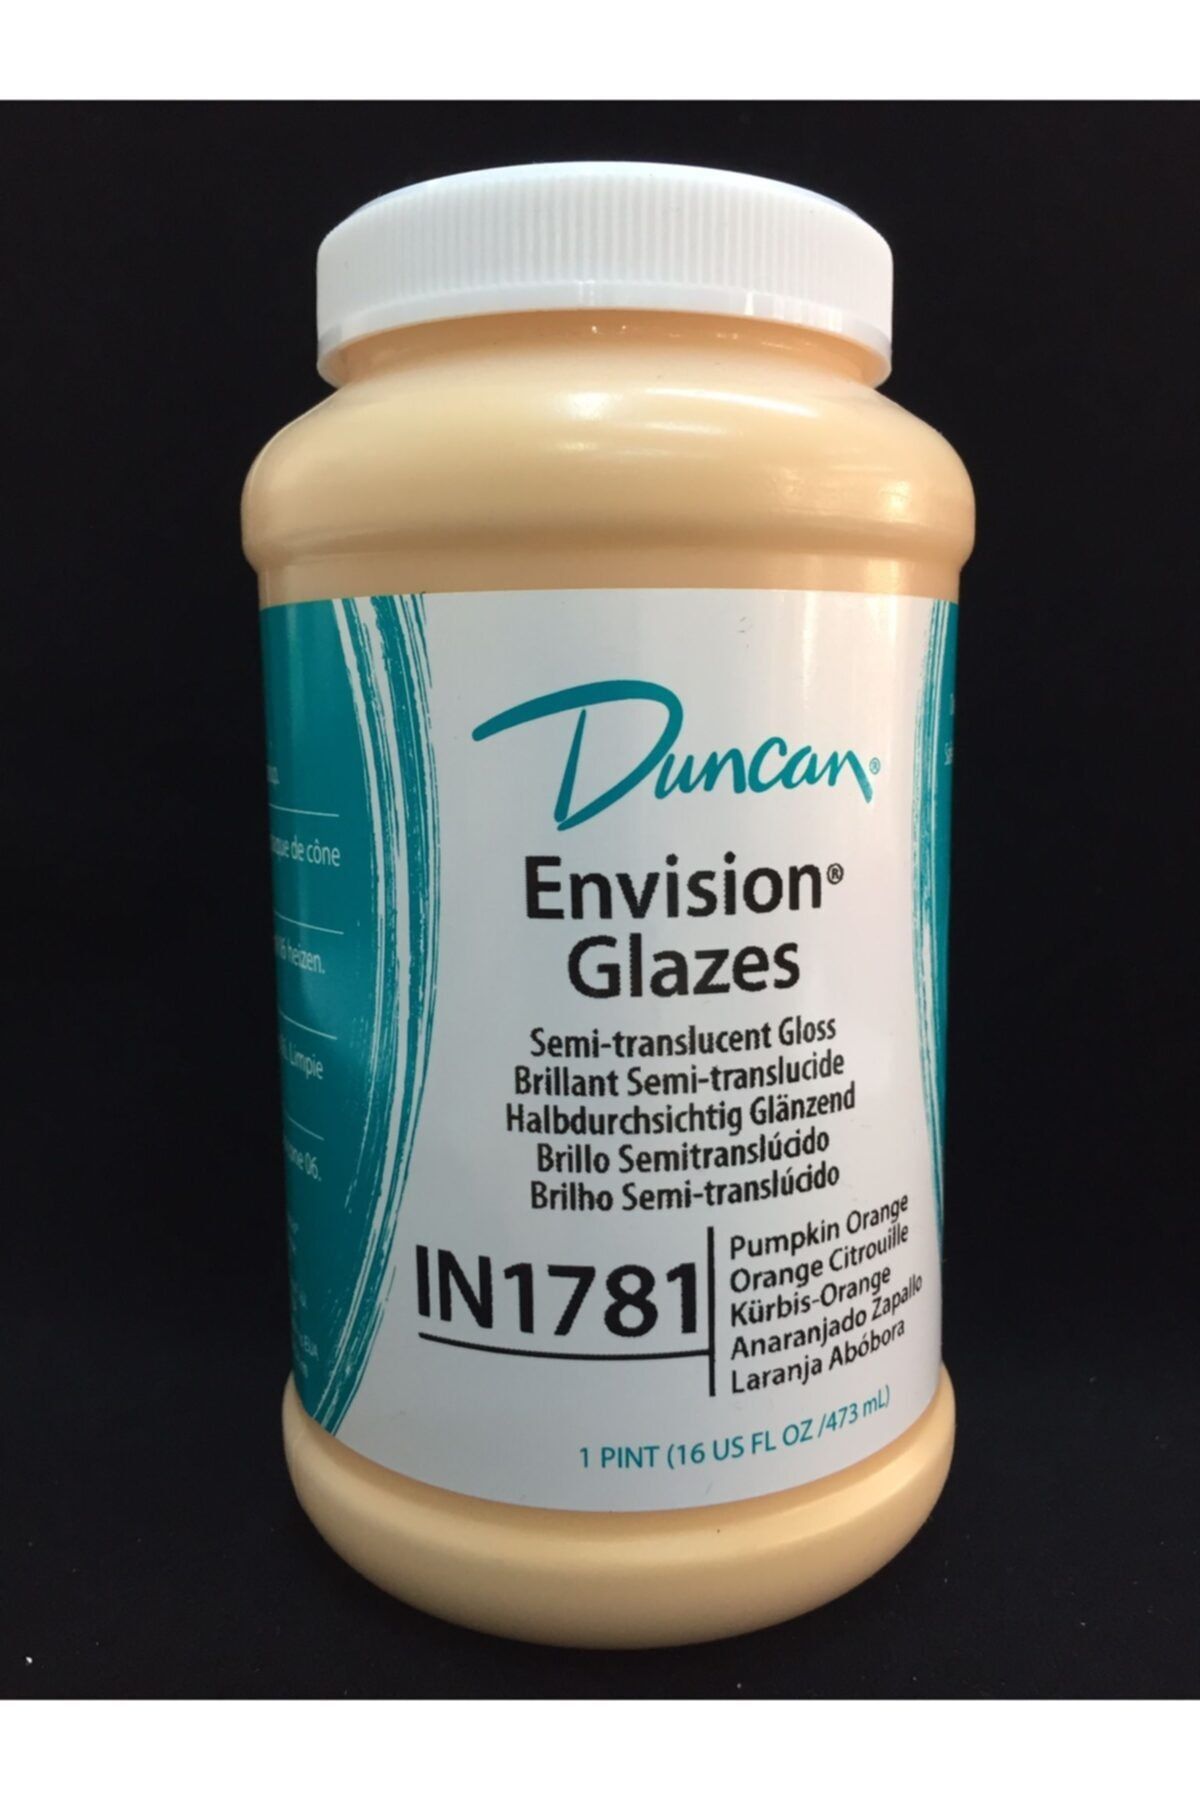 DUNCAN Envision&glazes Pumpkın Orange 16oz 473ml In1781-16